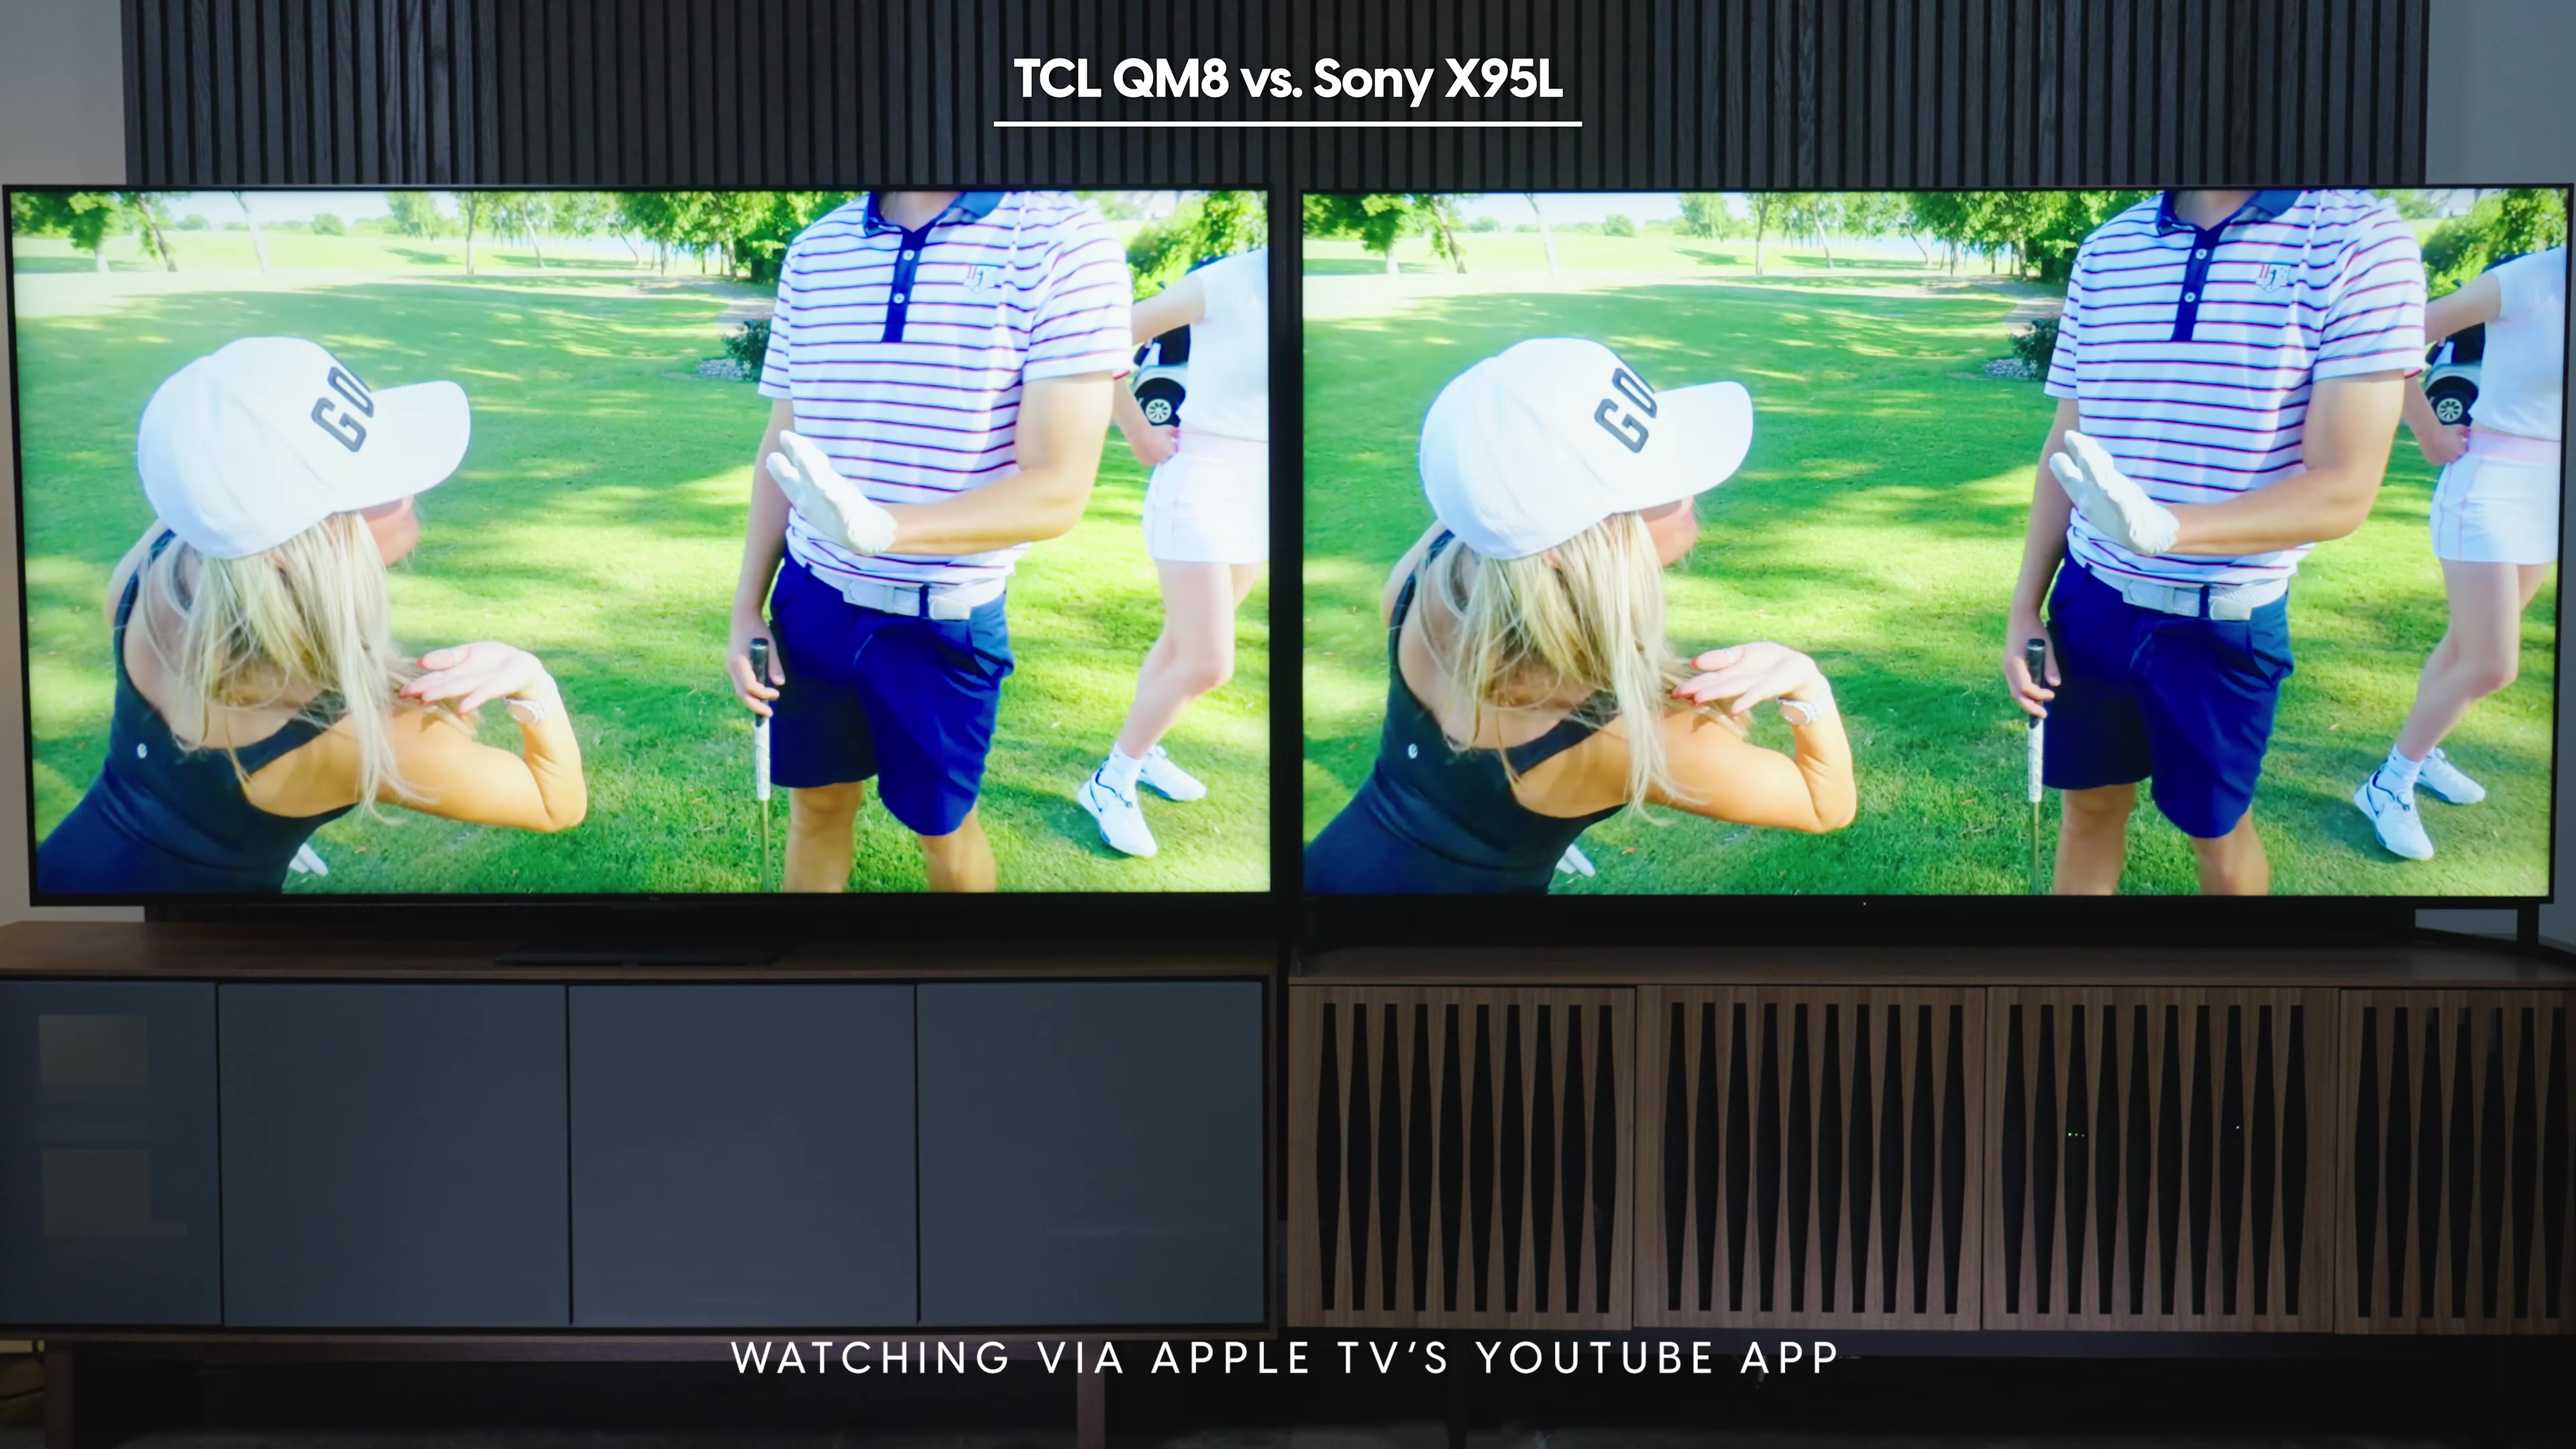 Comparação lado a lado de uma captura de tela do canal Good Good Golf no aplicativo Apple TV YouTube mostrado no Sony Bravia X95L vs TCL QM8.